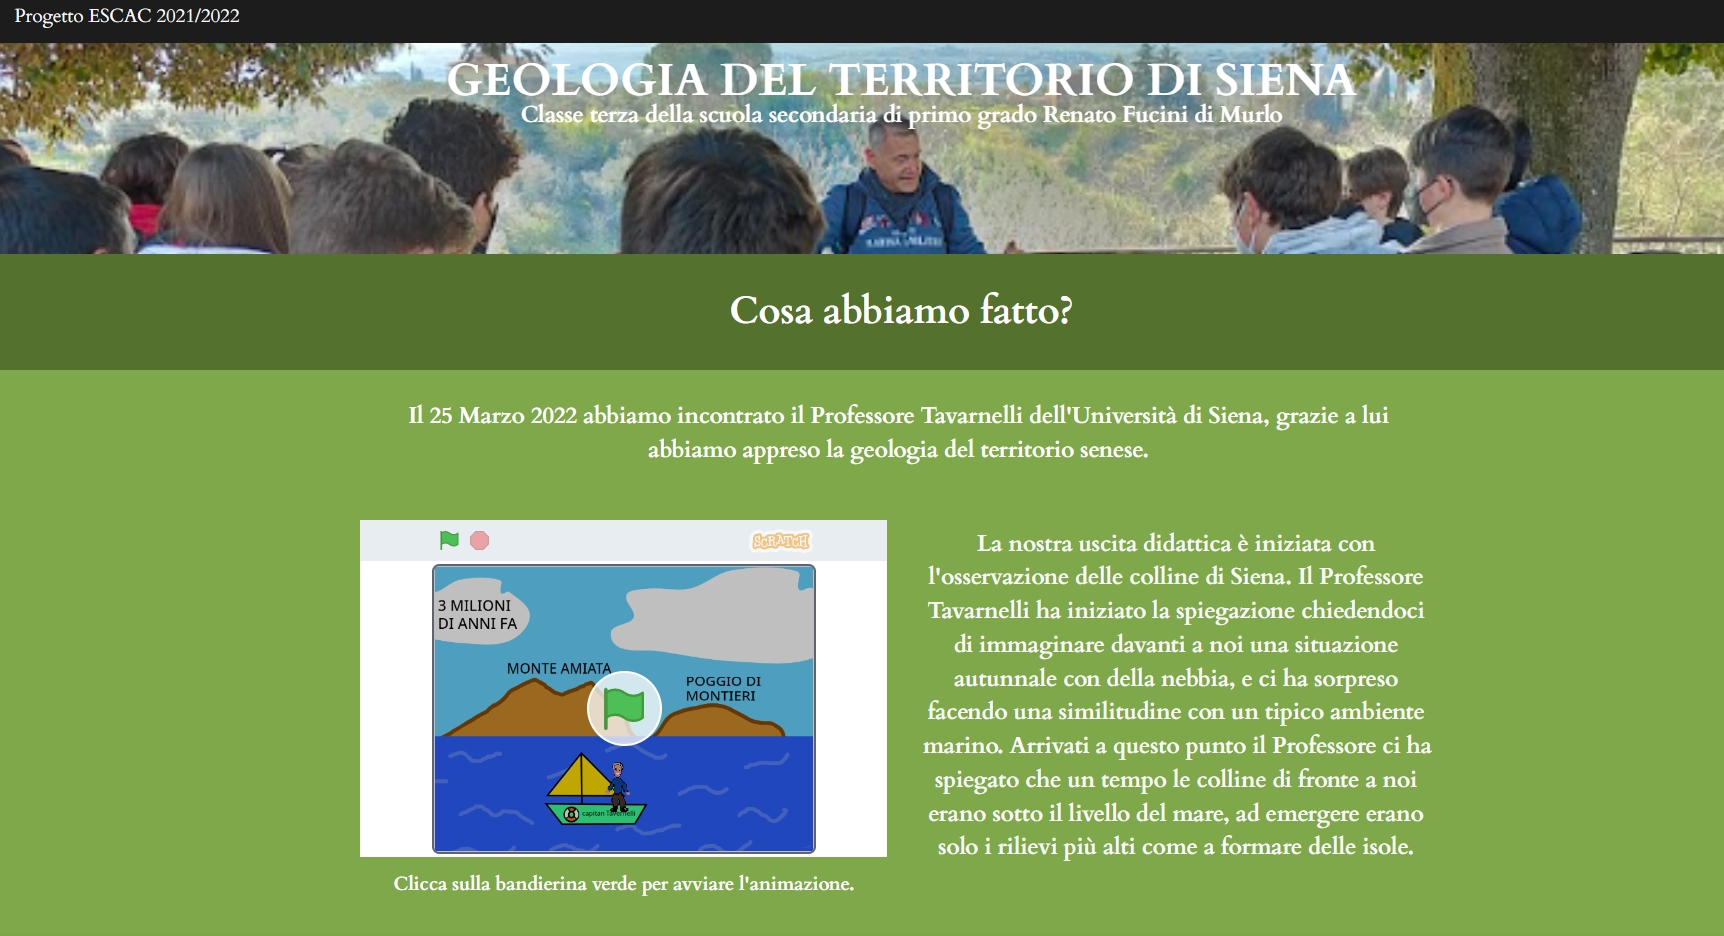 Il sito web sulla geologia del territorio senese - Scuola di Murlo per progetto ESCAC